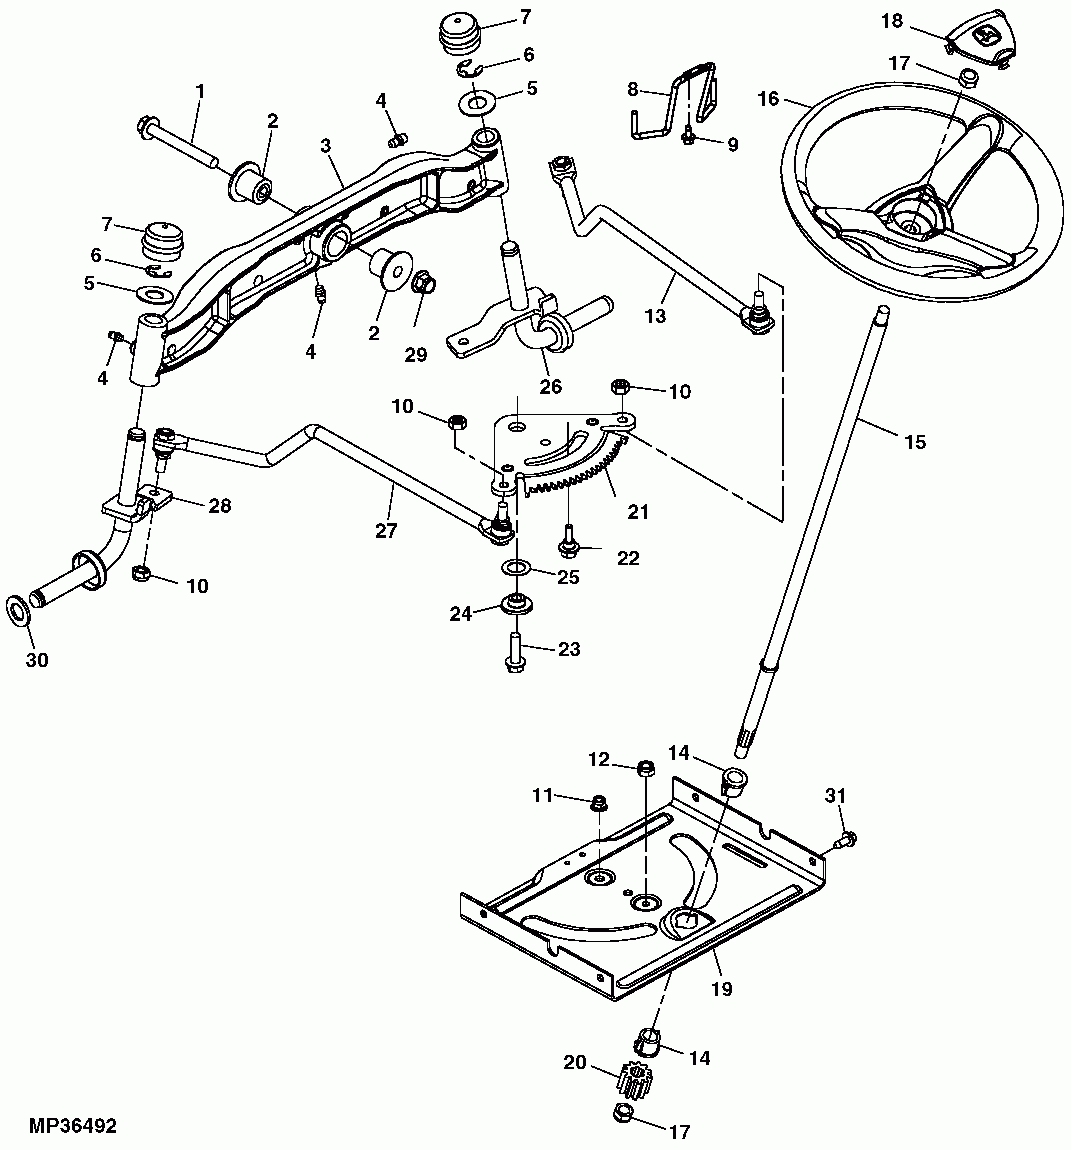 John Deere E Parts Diagram